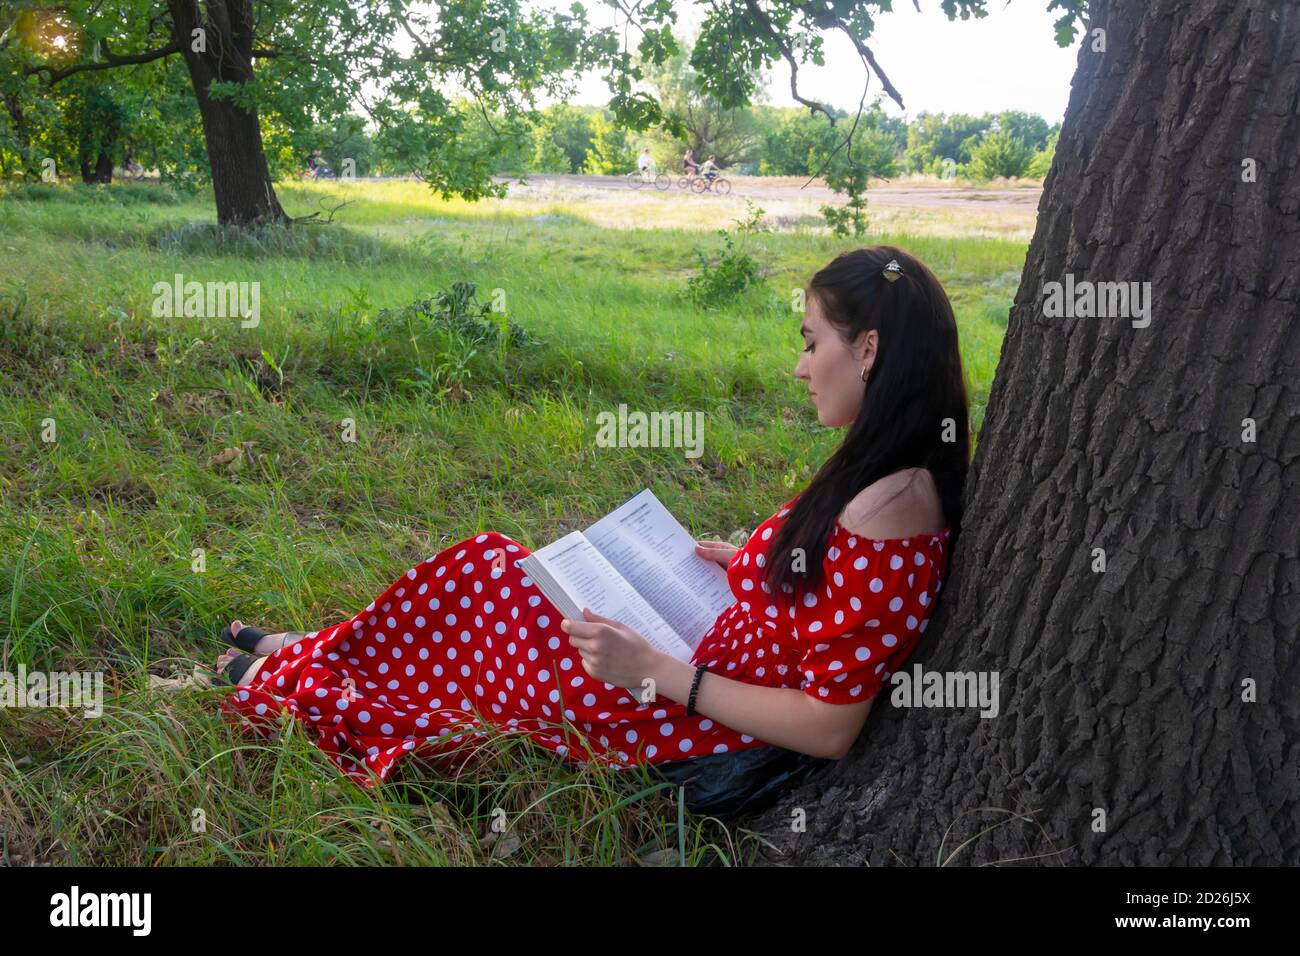 La joven está descansando en un día de verano en el parque. Una morena con un libro sobre la hierba cerca de un árbol se sienta con su espalda al tronco. Humor veraniego Foto de stock